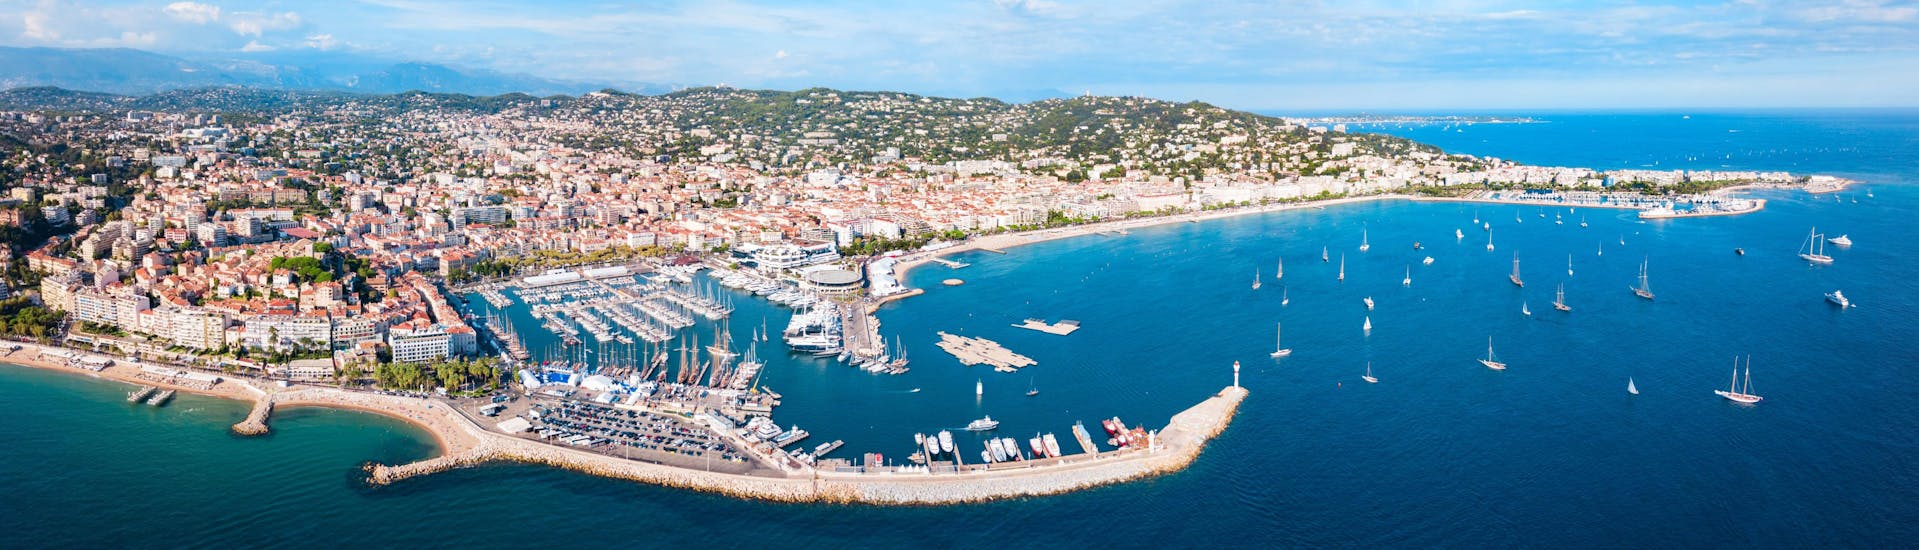 Ein Boot fährt entlang der Küsten des Naturparks L'Estérel, der ein beliebtes Ziel für Bootsaustouren von Cannes aus ist.